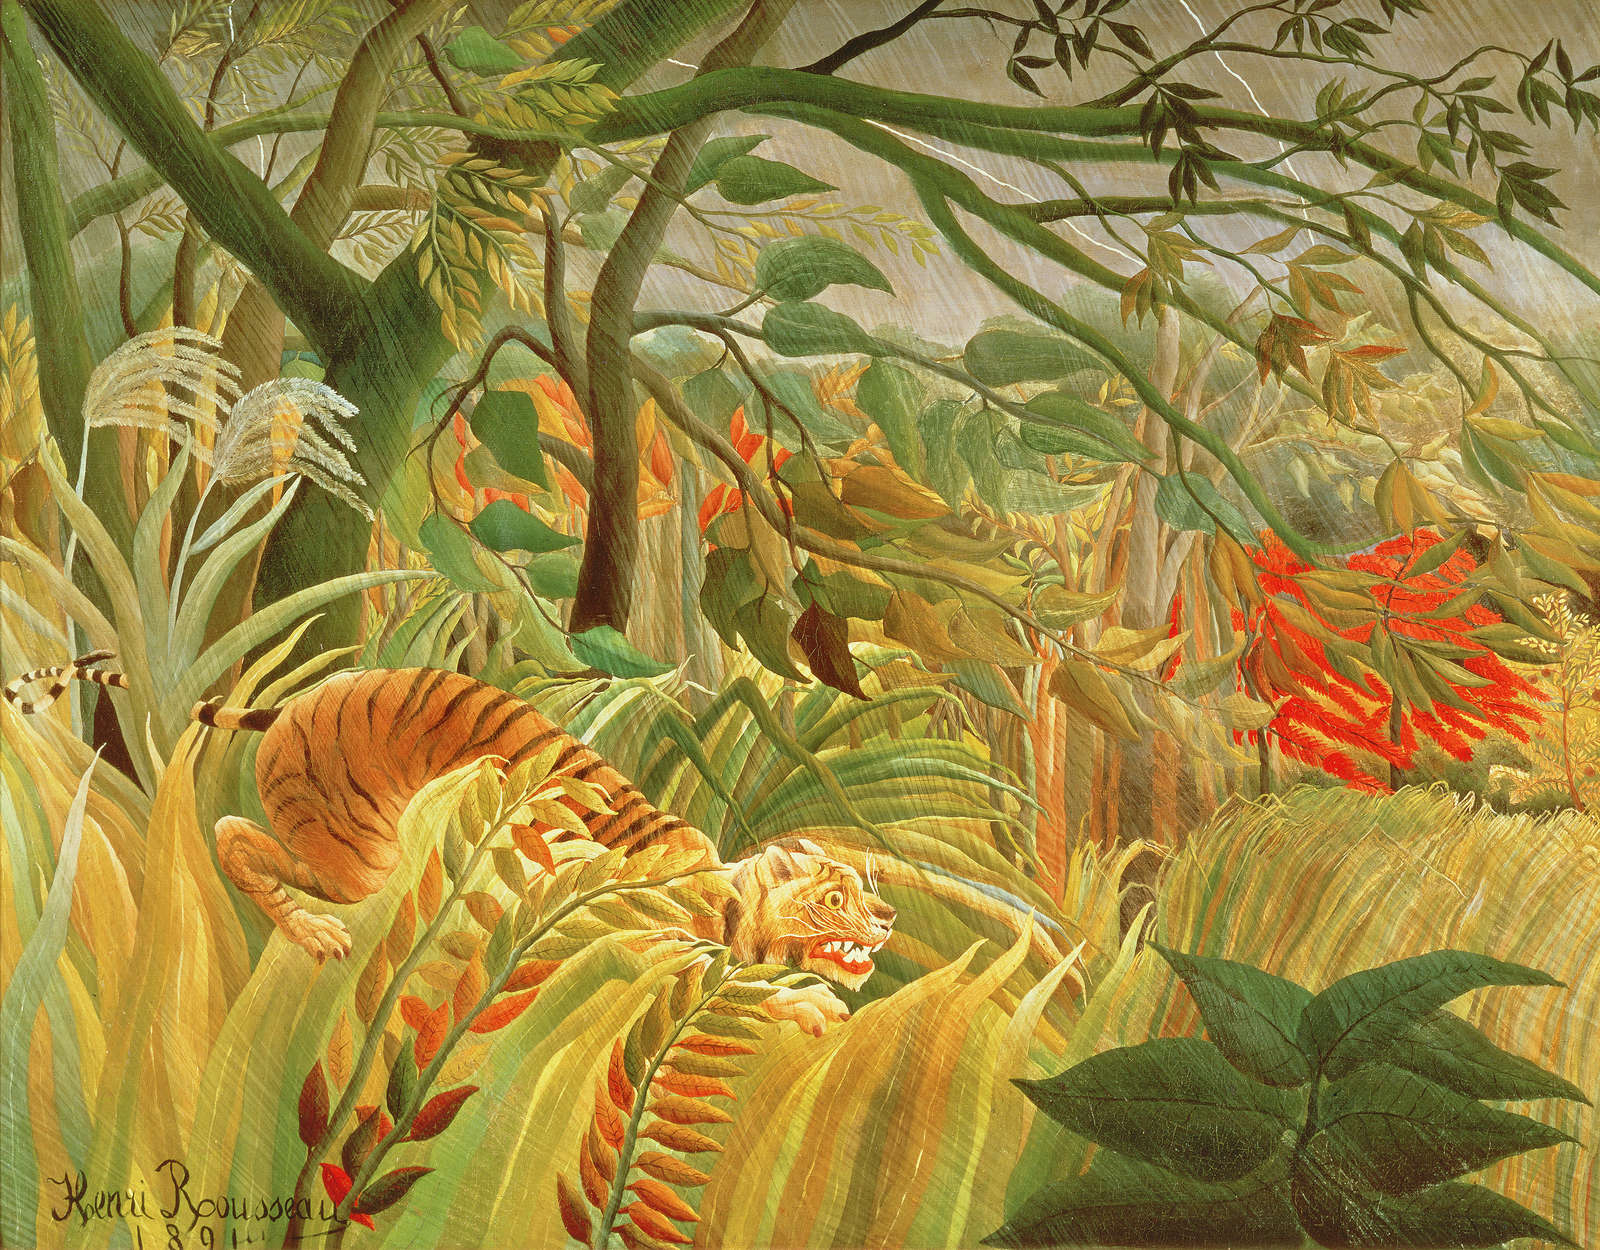             Mural "Tigre en una tormenta tropical" de Henri Rousseau
        